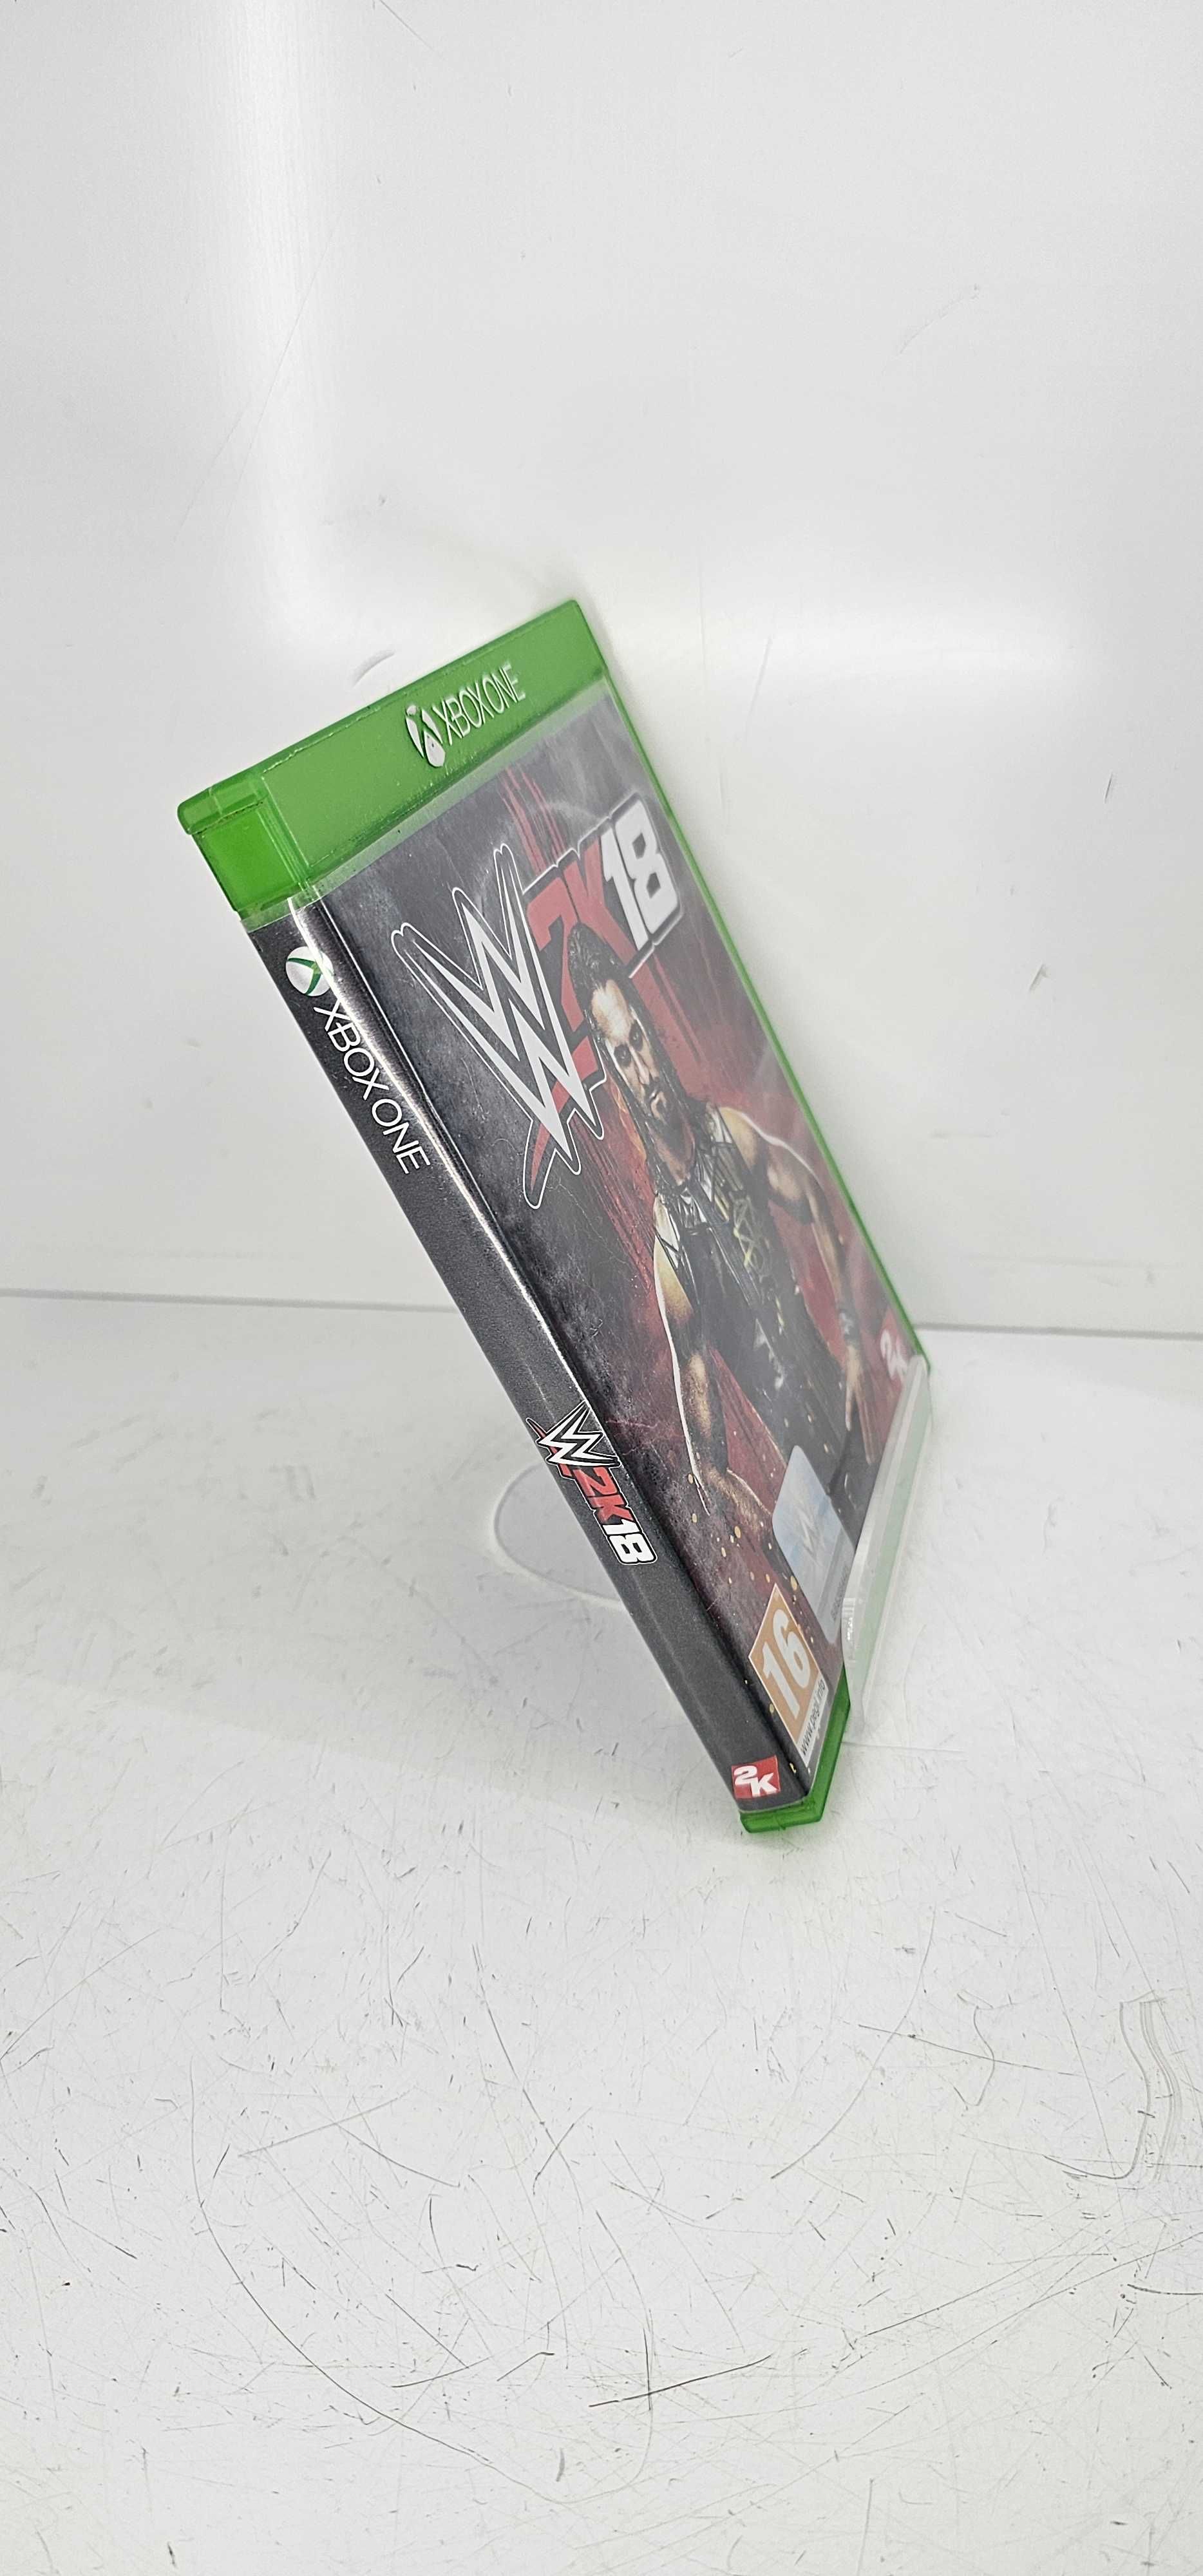 Gra W2K18 Wersja Angielska Xbox One